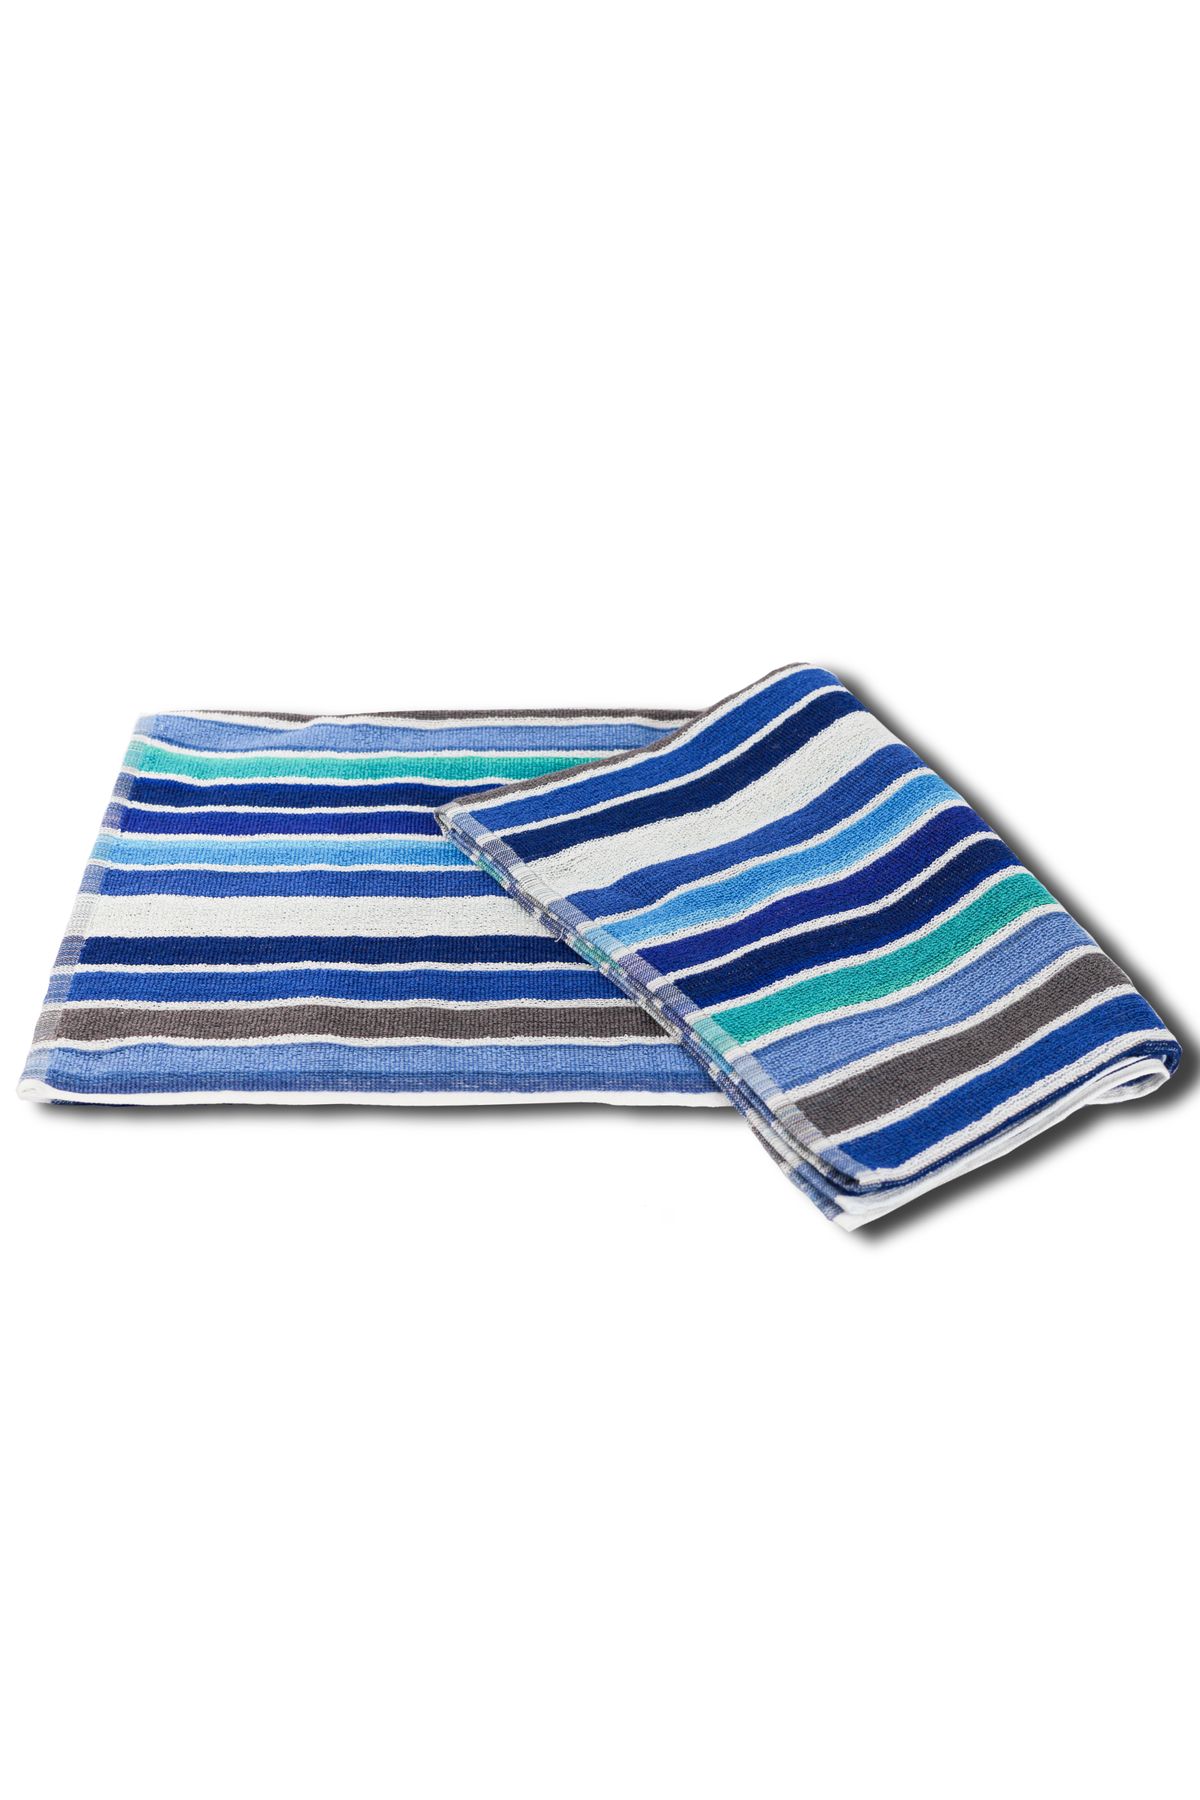 Taka Fabrics Çizgili Desenli Plaj Havlusu % 100 Pamuk Yüksek Emici İplik Boyalı 75x150 cm (01)